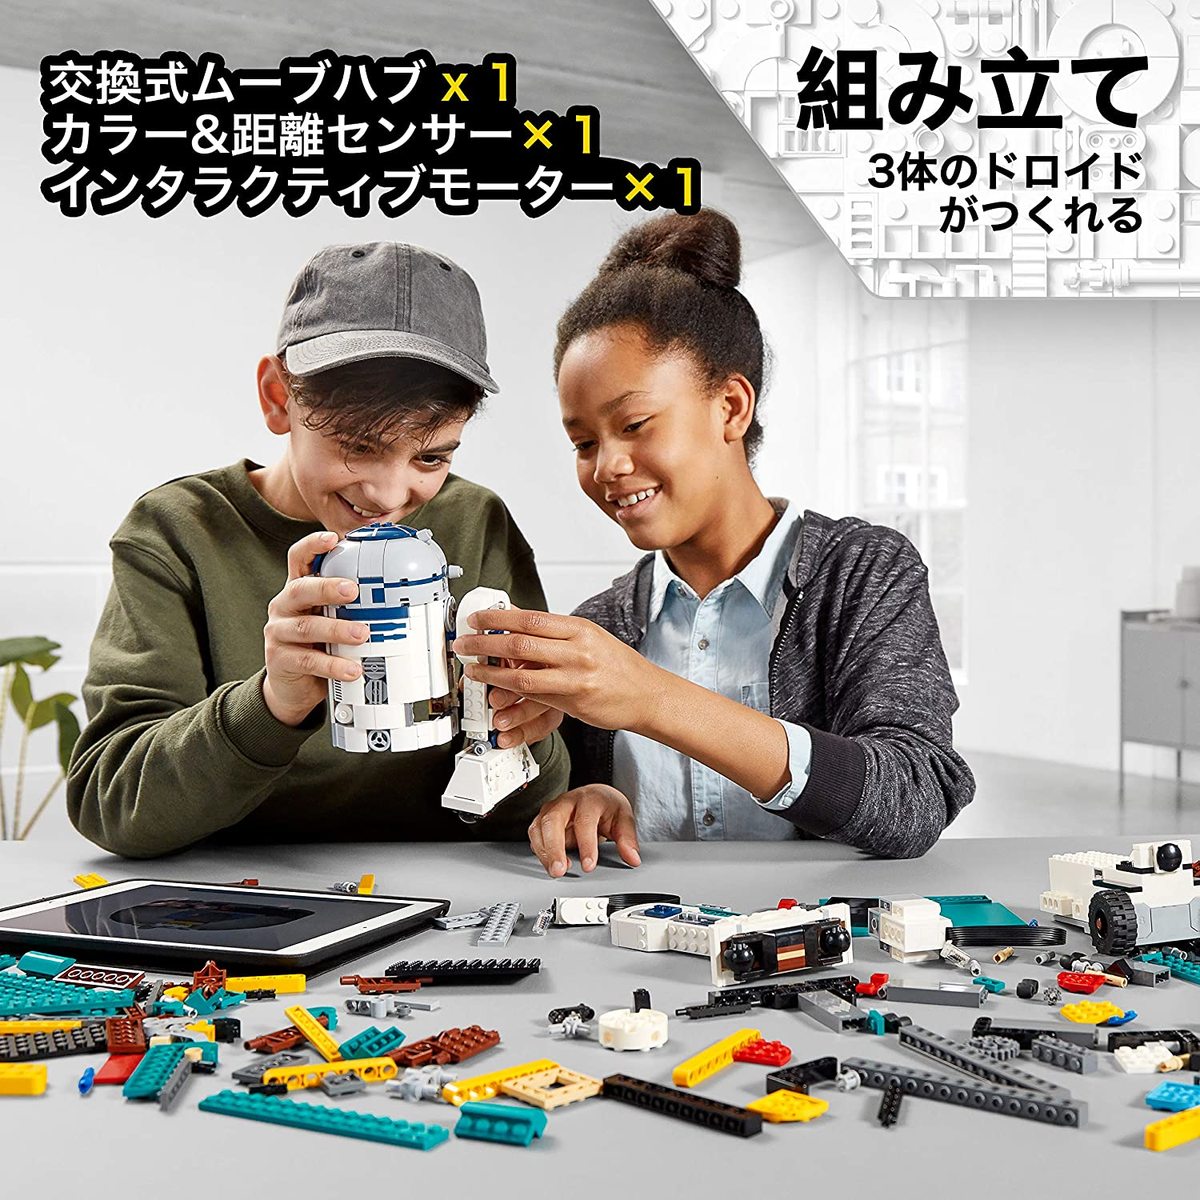 【24時間限定クーポン配布中】レゴ(LEGO) スター・ウォーズ ドロイド・コマンダー 75253